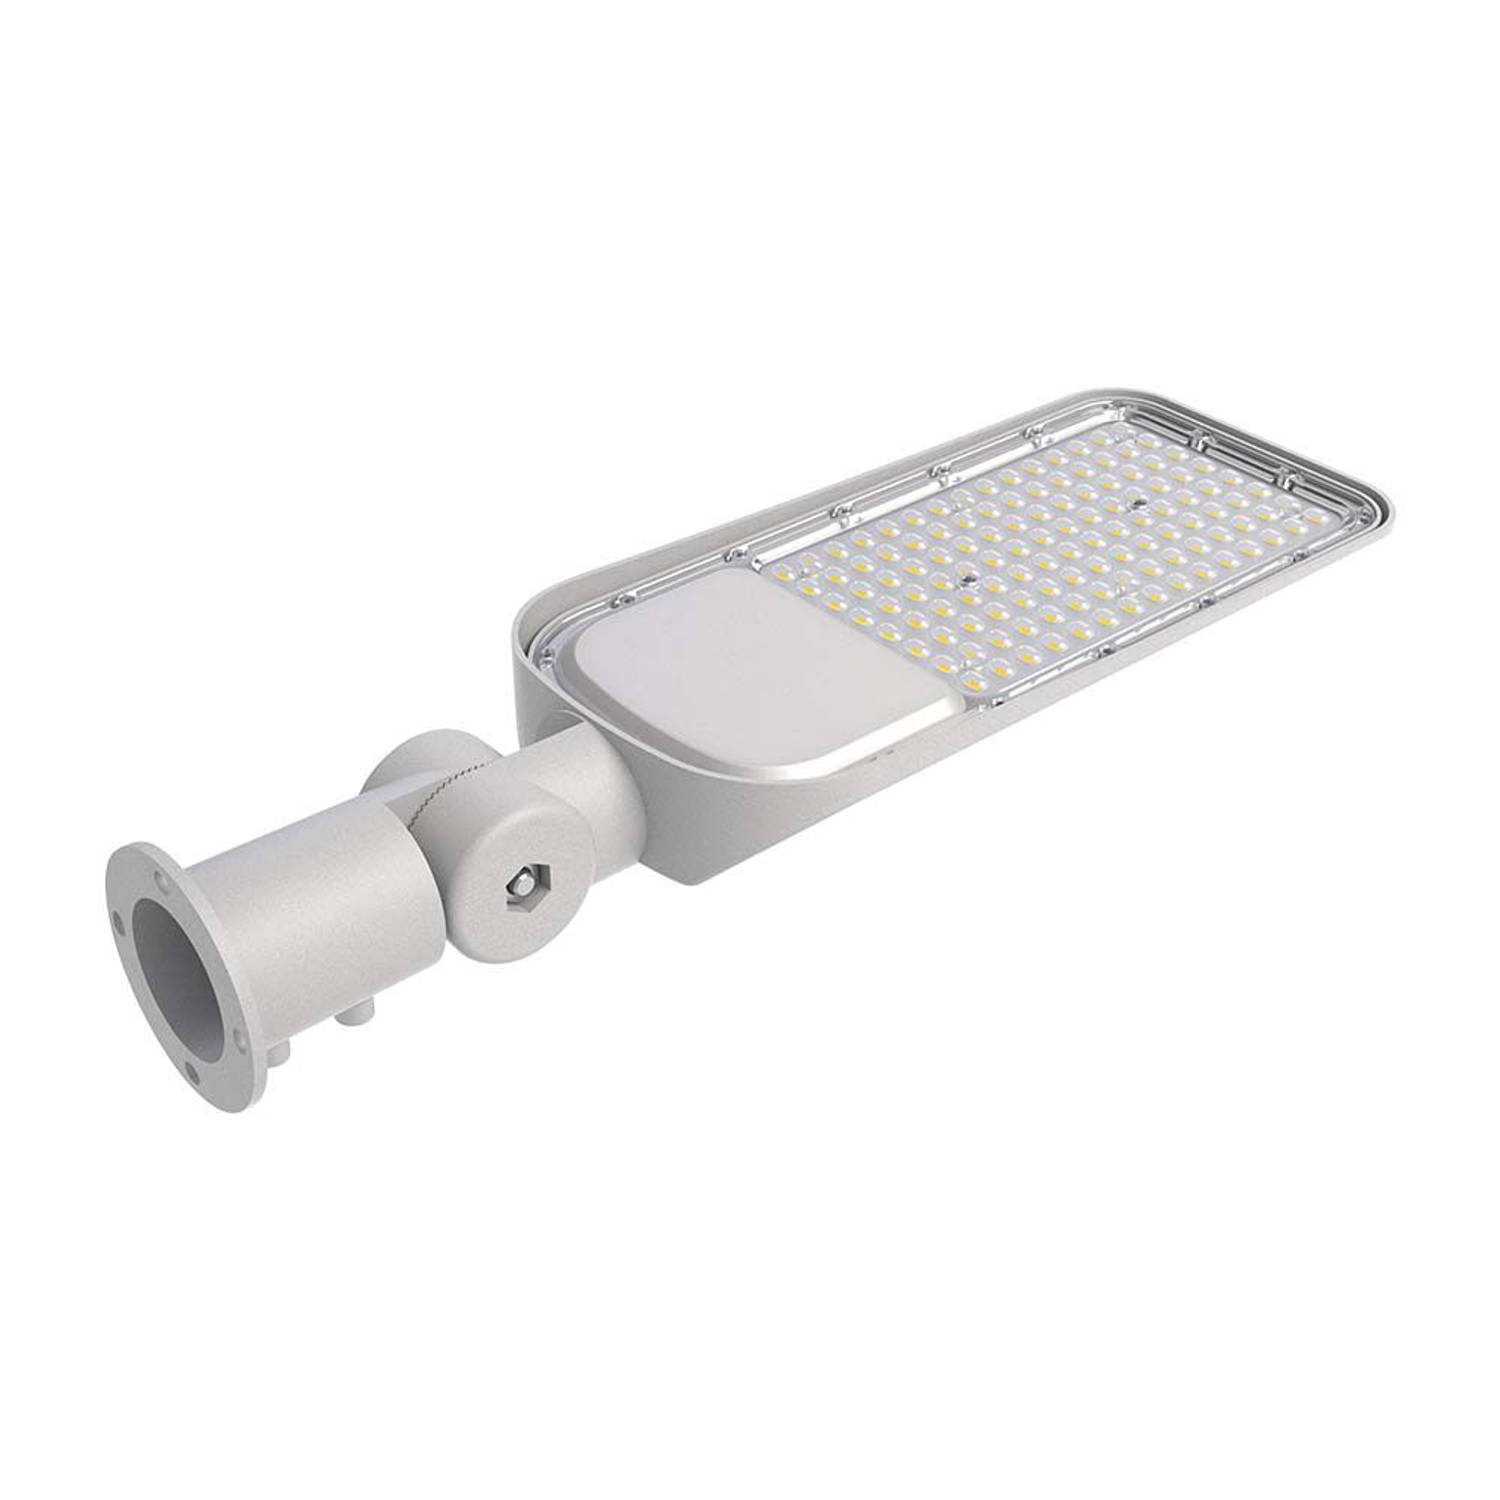 V-TAC VT-79ST-N LED-straatverlichting - Regelbare straatverlichting - 135lm/w - Samsung - IP65 - 70 Watt - 8040 Lumen -